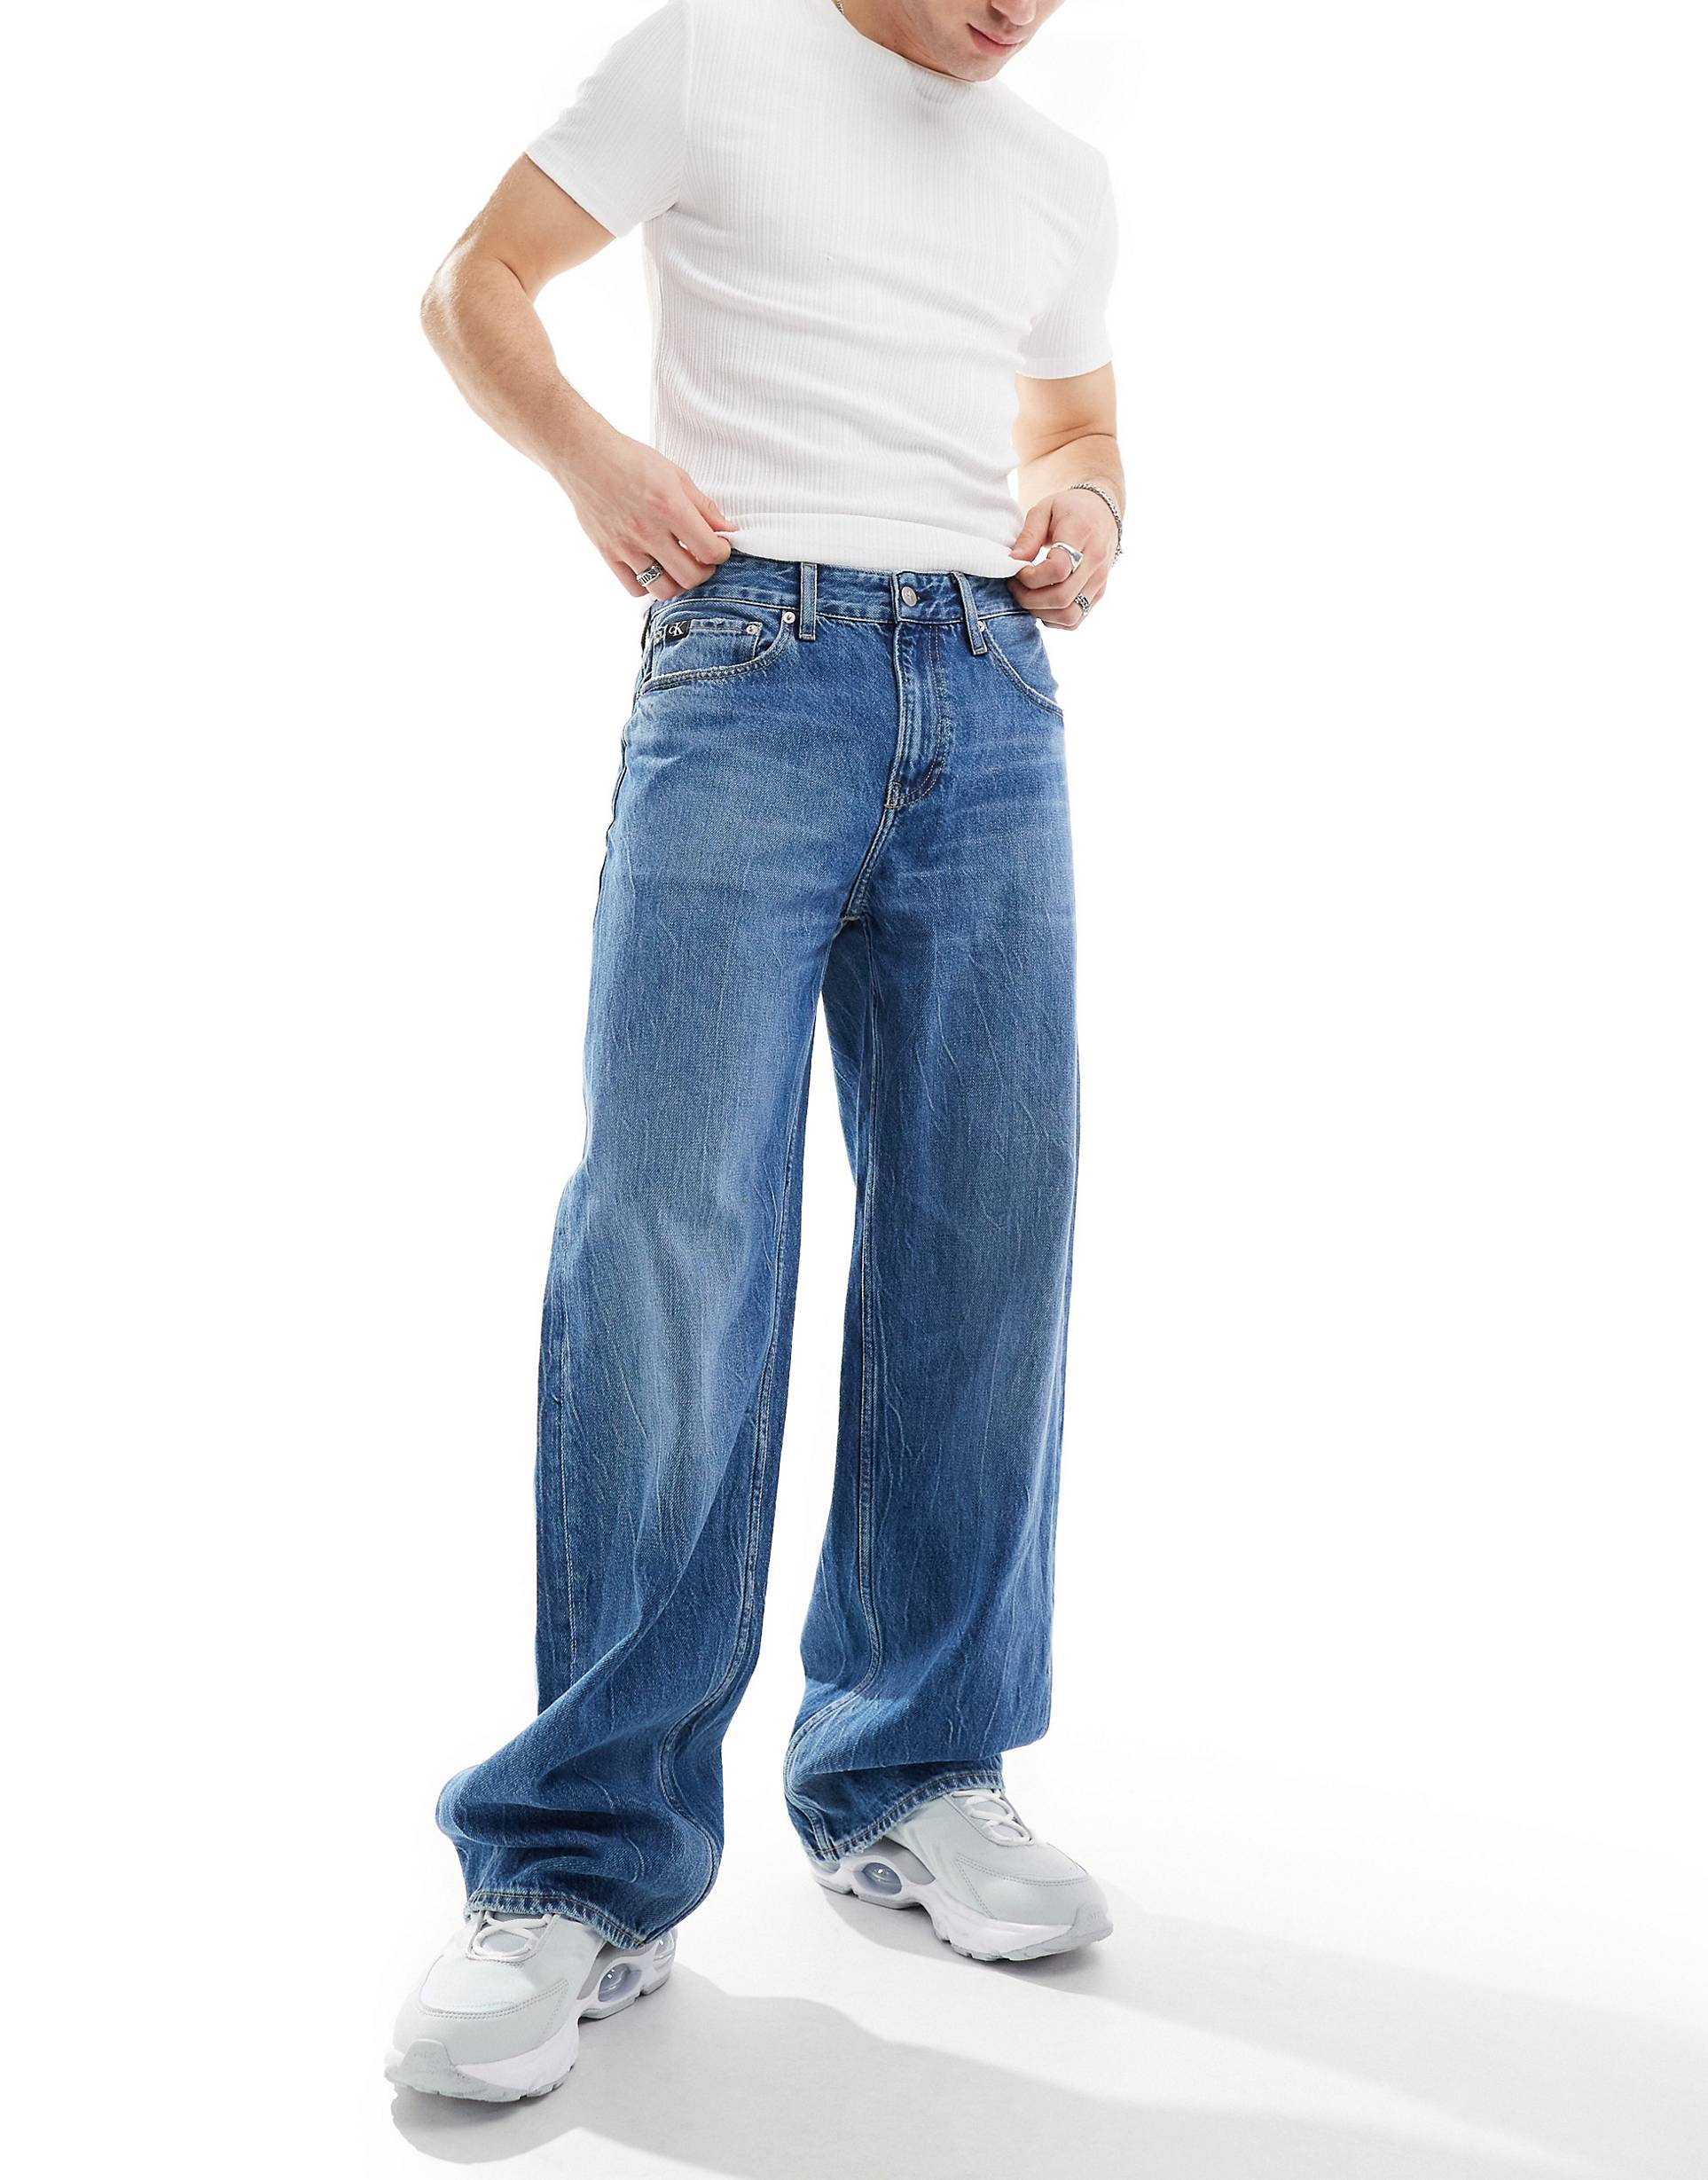 Джинсы Calvin Klein Jeans Loose Straight, темно-синий джинсы bodyflirt темно синие 40 размер